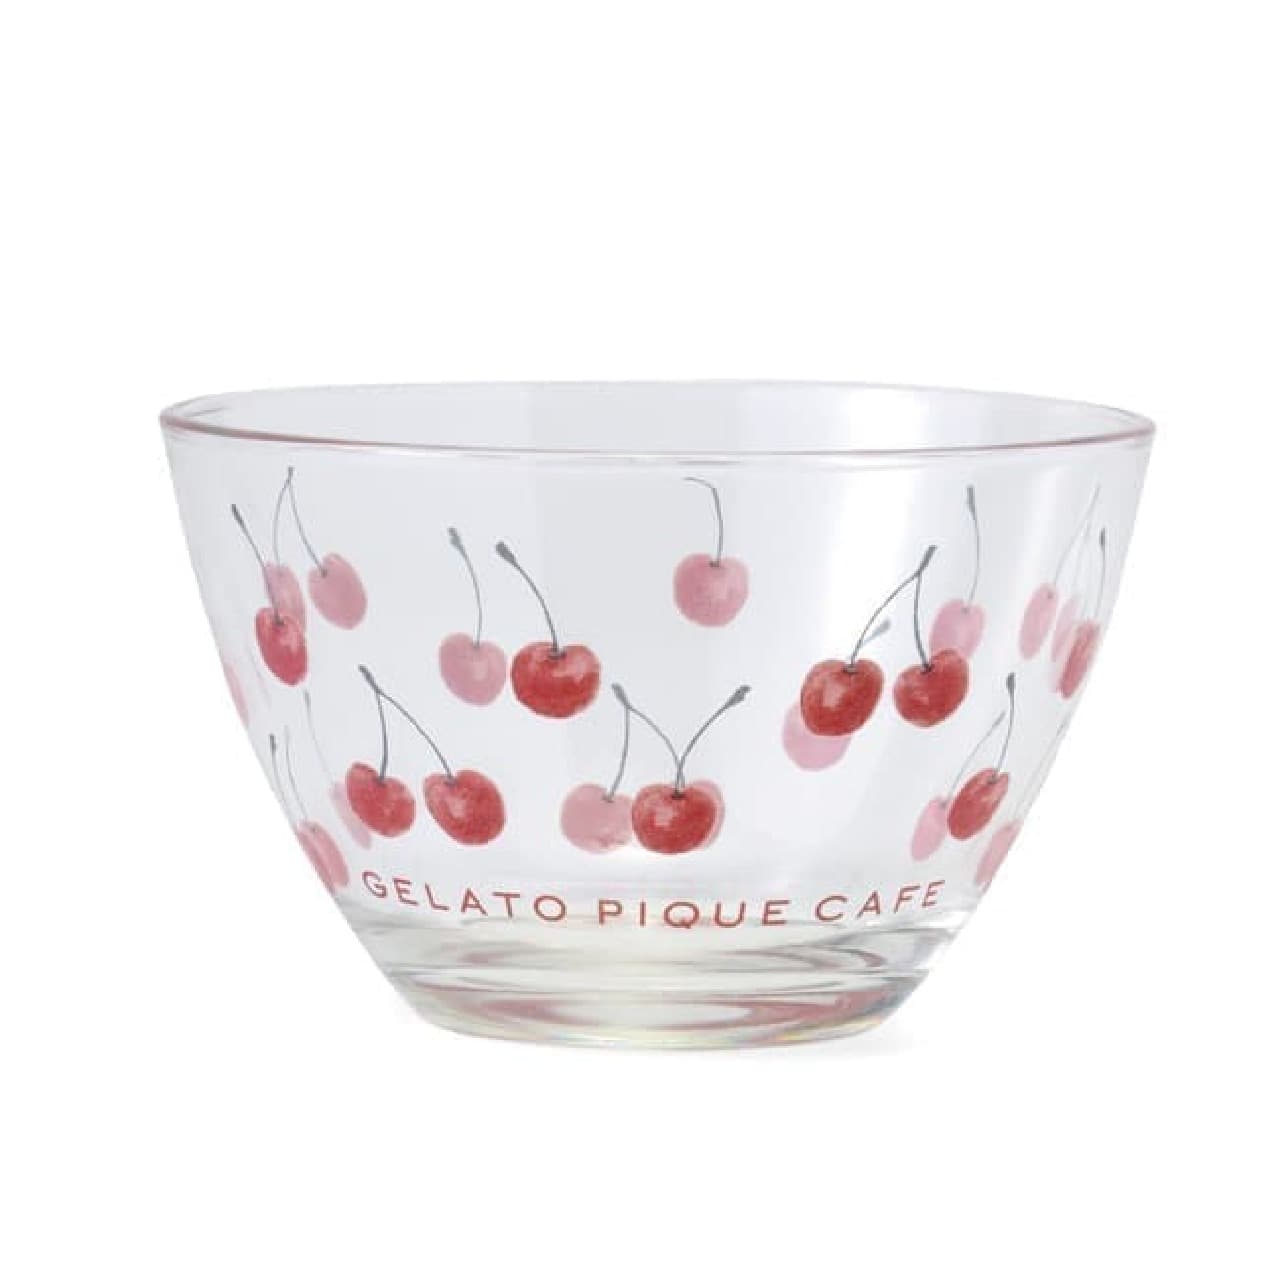 Gelato Pique Cafe "Cherry Motif Eco Bag" Cute glasses and bowls